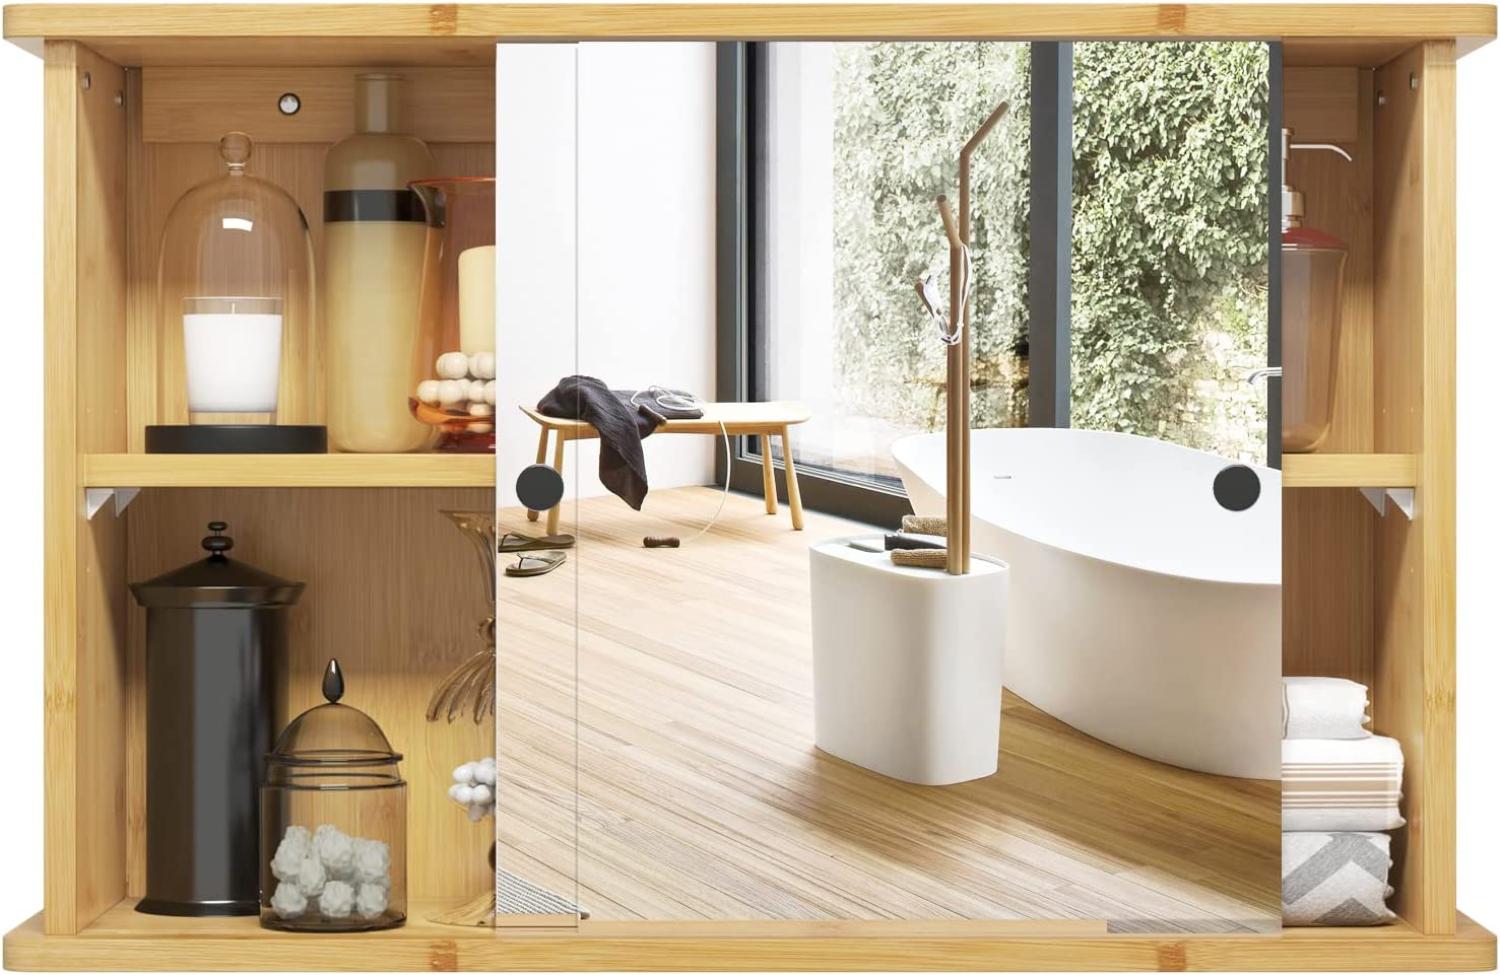 EUGAD Spiegelschrank für Bad, Badezimmerschrank mit Spiegeln, hängender Badschrank mit Schiebetüren, Hängeschrank für Badezimmer, mit Verstellbarer Ablage, aus Bambus, 55x35,5x14 cm Bild 1